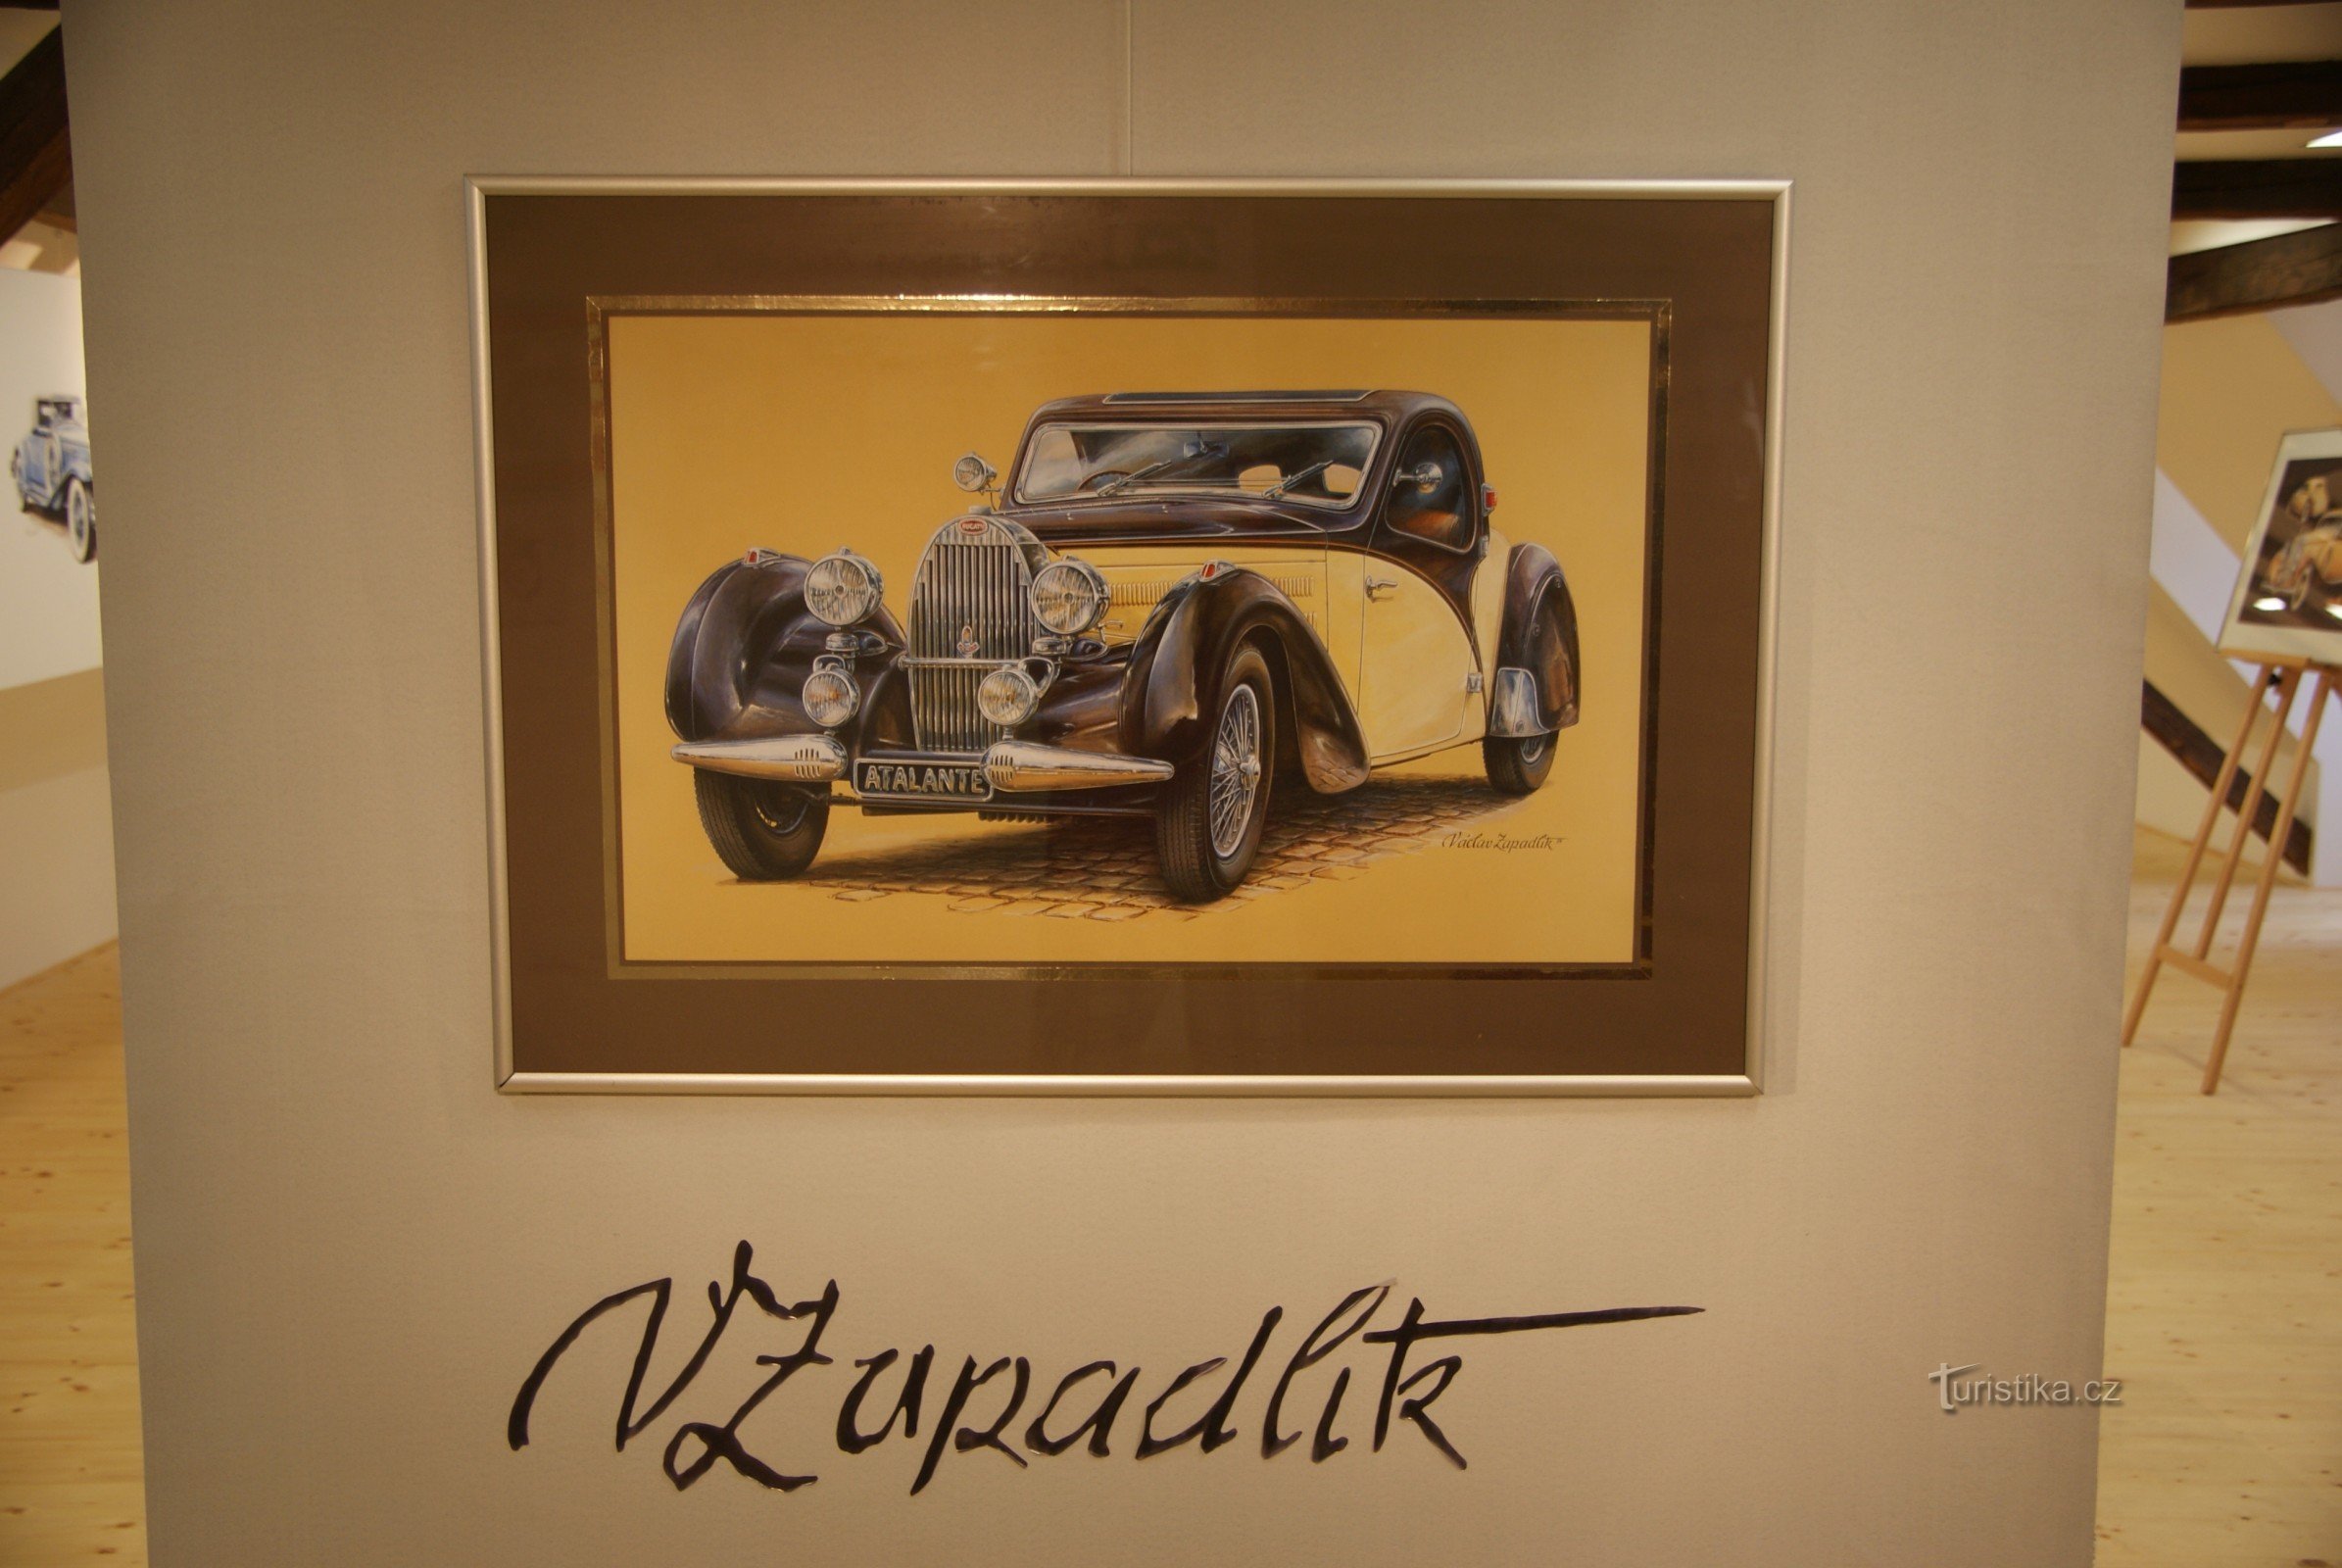 exposición "Imágenes del mundo del automóvil" de Václav Zapadlík